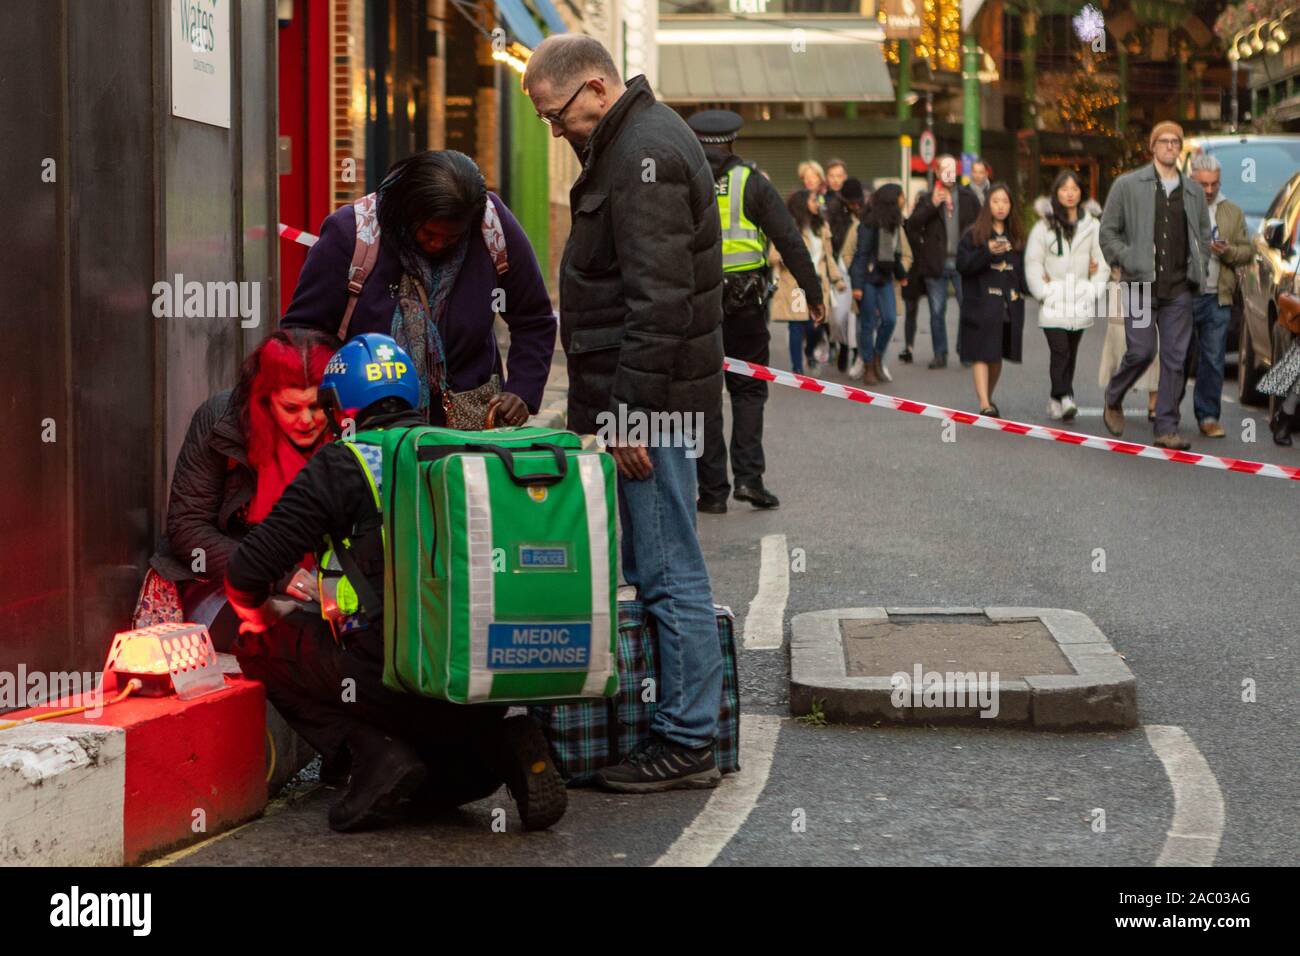 Borough Market, London, UK. 29 Nov, 2019. Eine Frau wird von einem Arzt behandelt. Szenen um Borough Markt, Southwark, da das Gebiet nach der mutmaßlichen Terroranschlag auf in der Nähe der London Bridge evakuiert. Penelope Barritt/Alamy leben Nachrichten Stockfoto